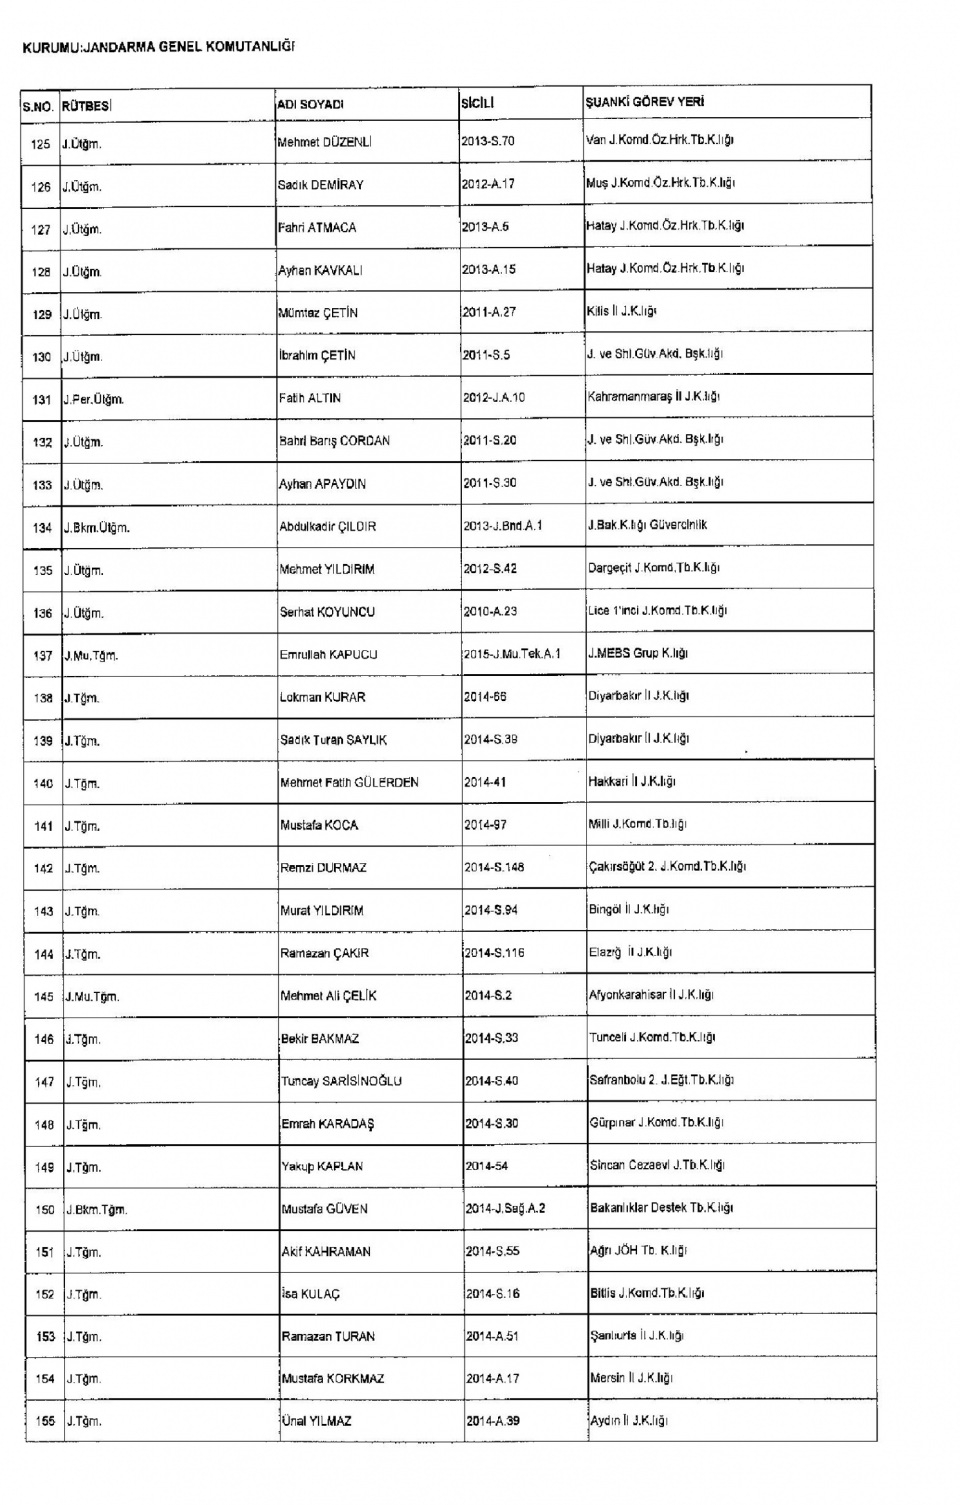 Kamudan ihraç edilenlerin isim isim listesi 45